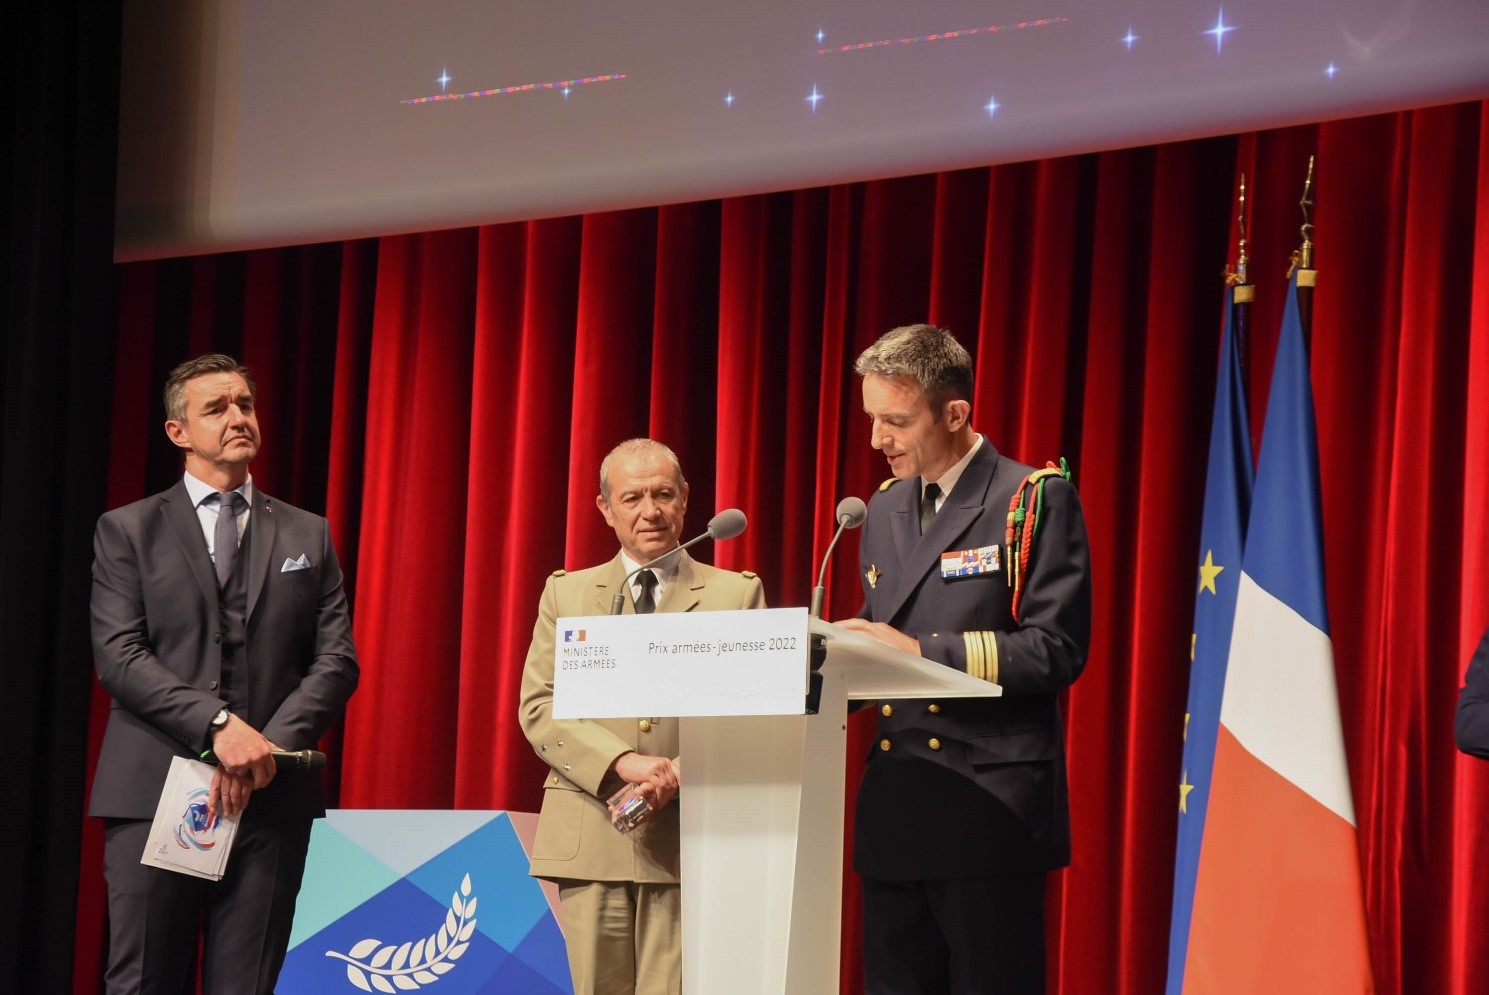 Prix Armées - Jeunesse 2022 - La Marine de nouveau récompensée